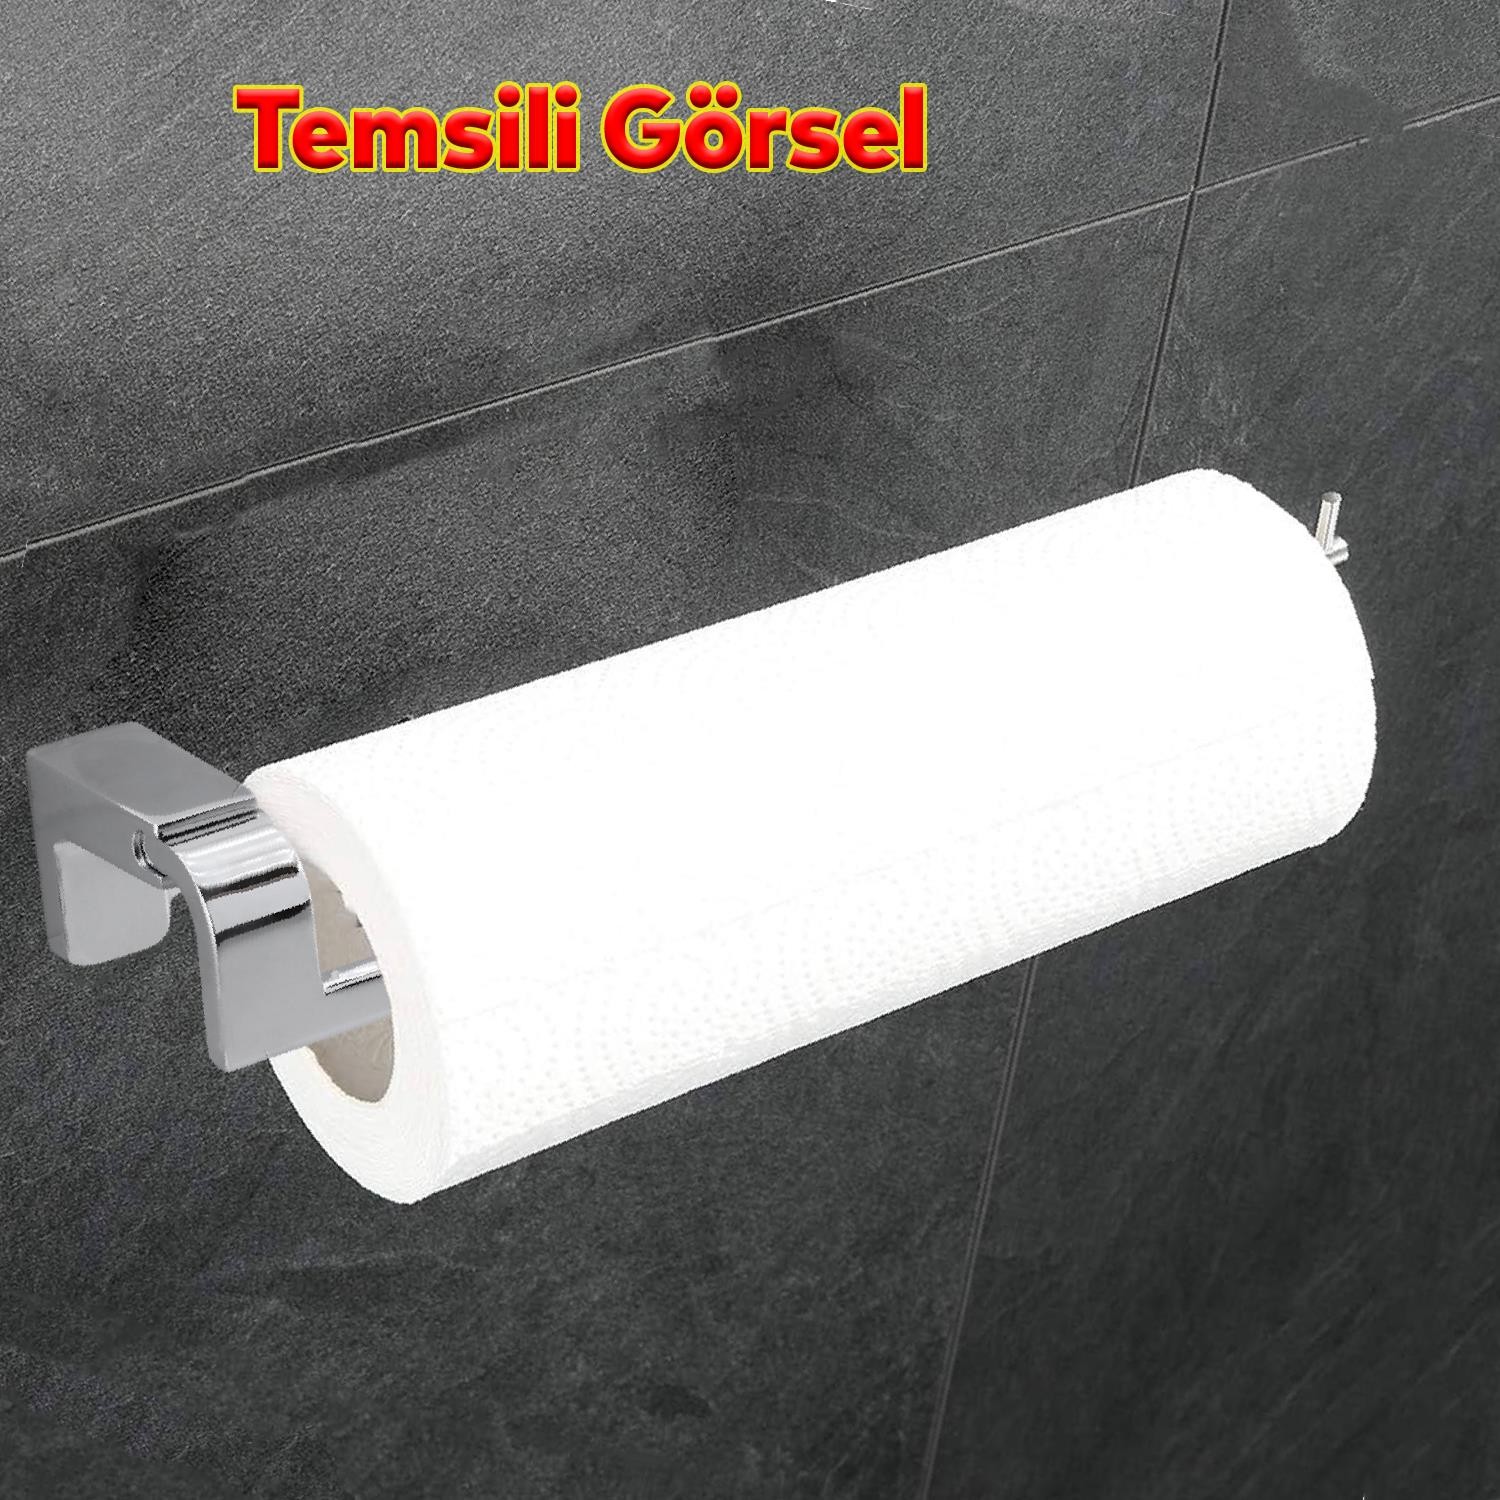 Banyo Lavabo Mutfak Aparat Uzun Kağıt Havluluk Açık Kağıtlık 26 cm Metal Sağlam Krom